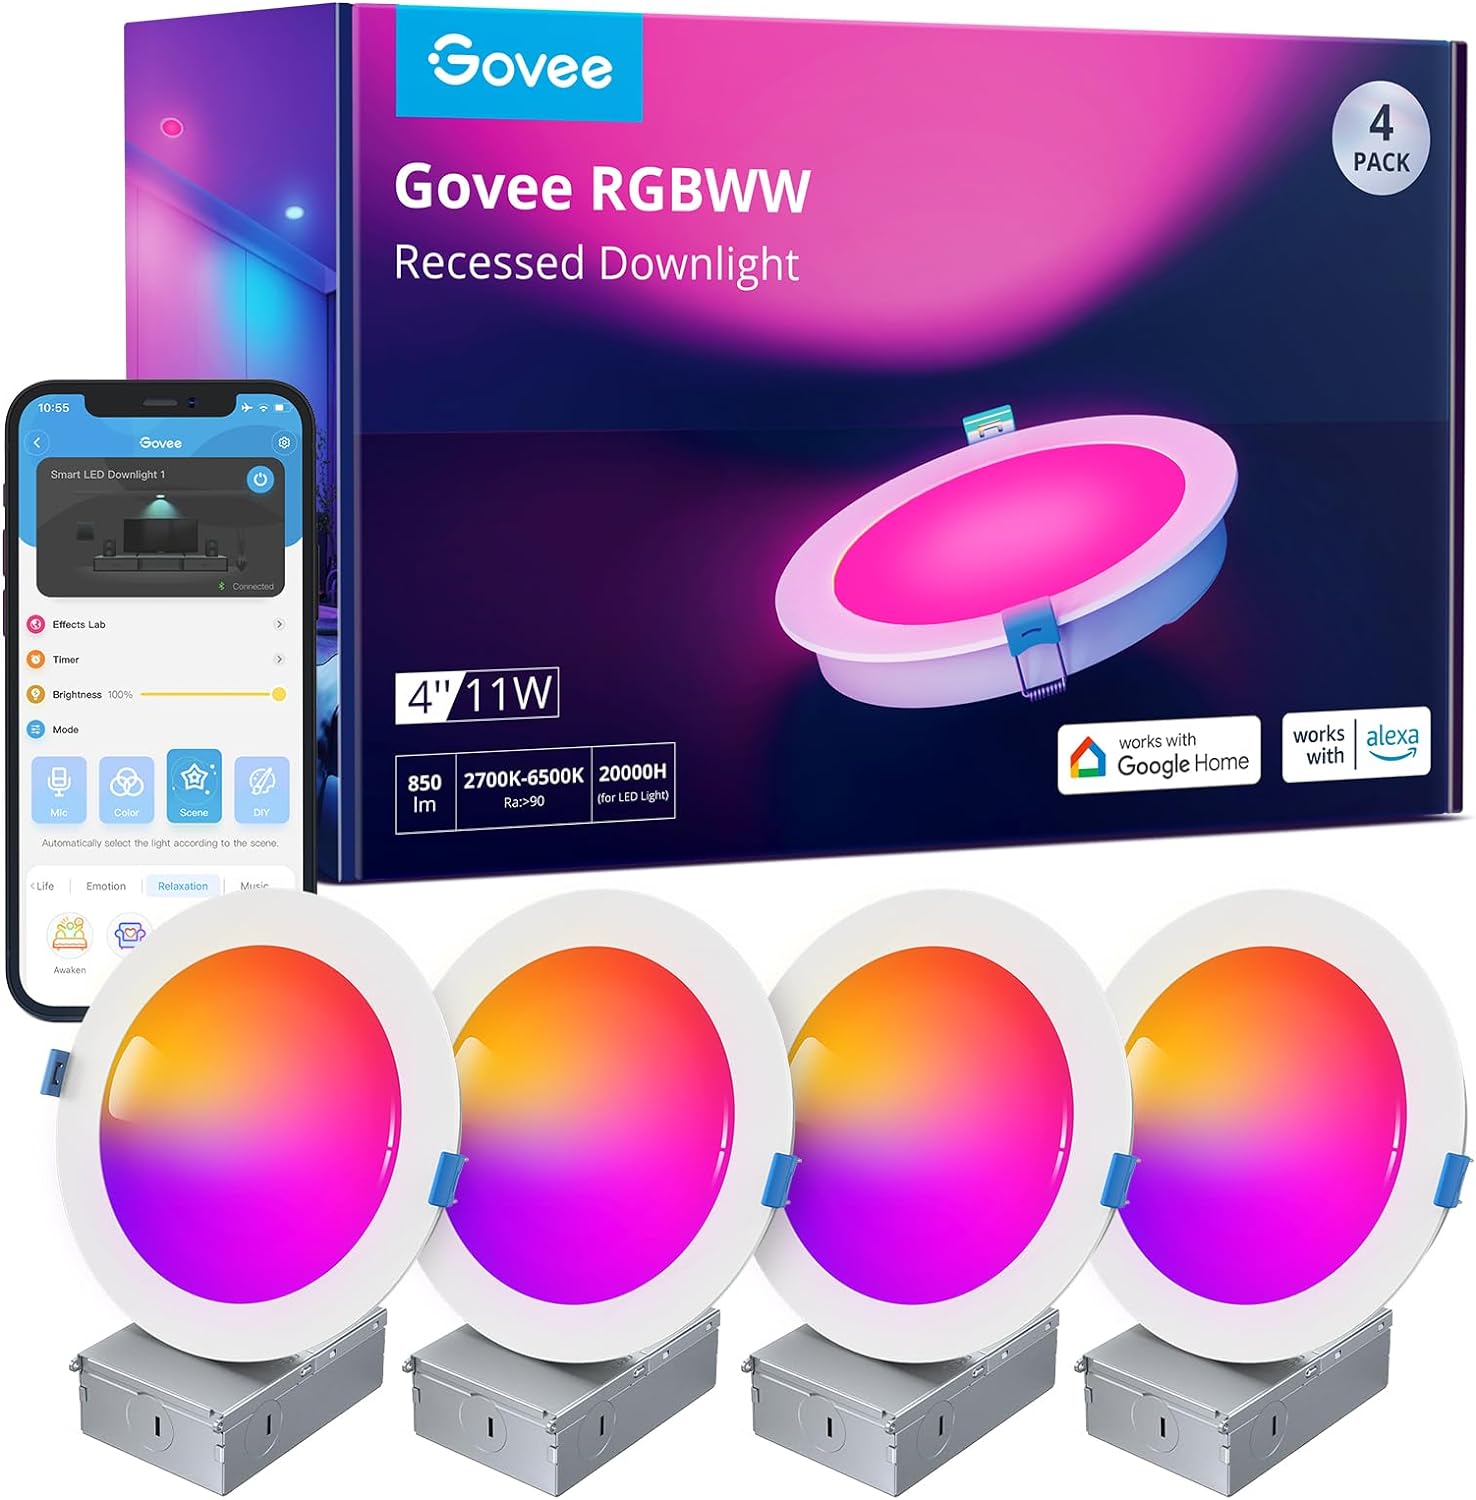 Govee Smart RGBWW Plafondverlichting, dimbare led-inbouwlamp met wifi en bluetooth, 16 miljoen doe-het-zelf-kleuren met aansluitdoos, Alexa & Google Assistant, verpakking van 4 stuks